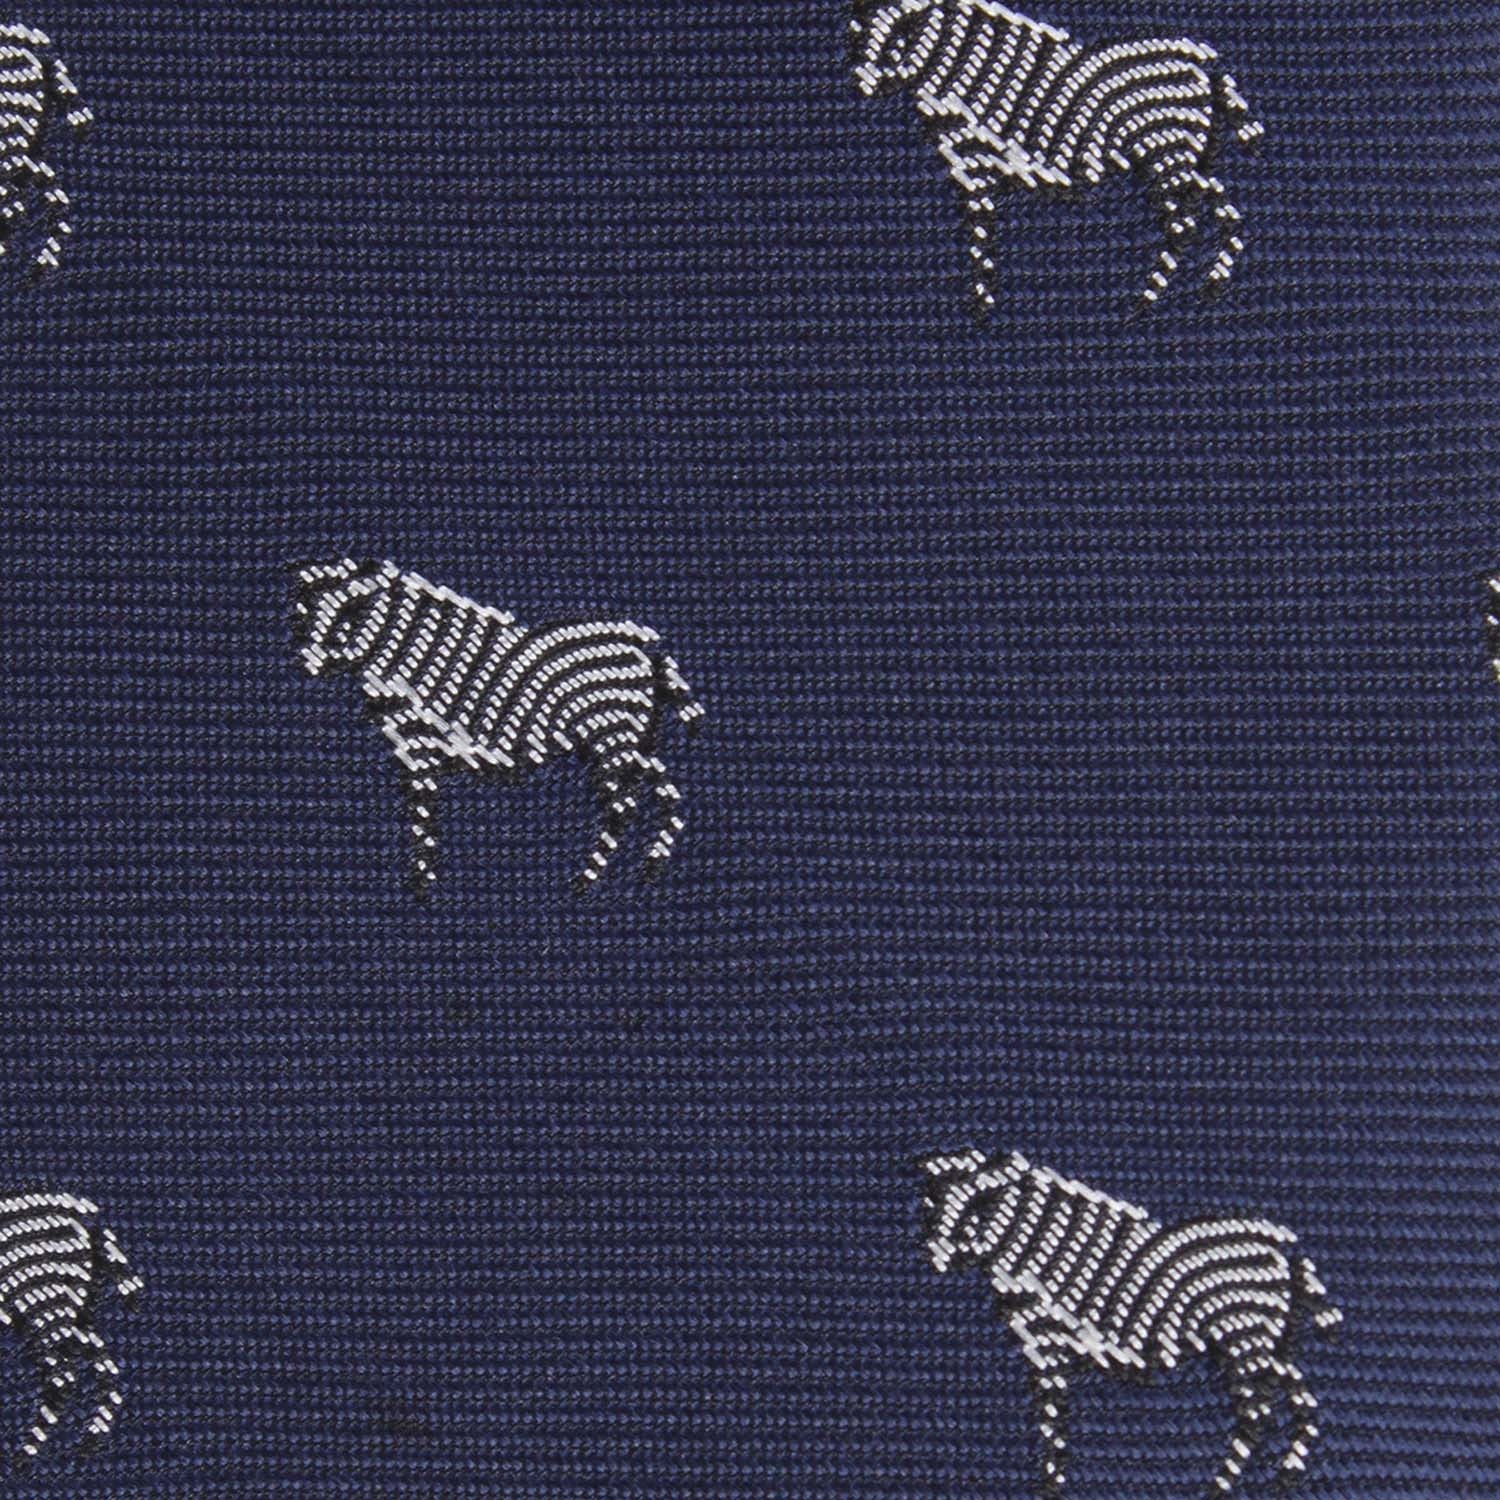 Navy Blue Zebra Fabric Skinny Tie M105